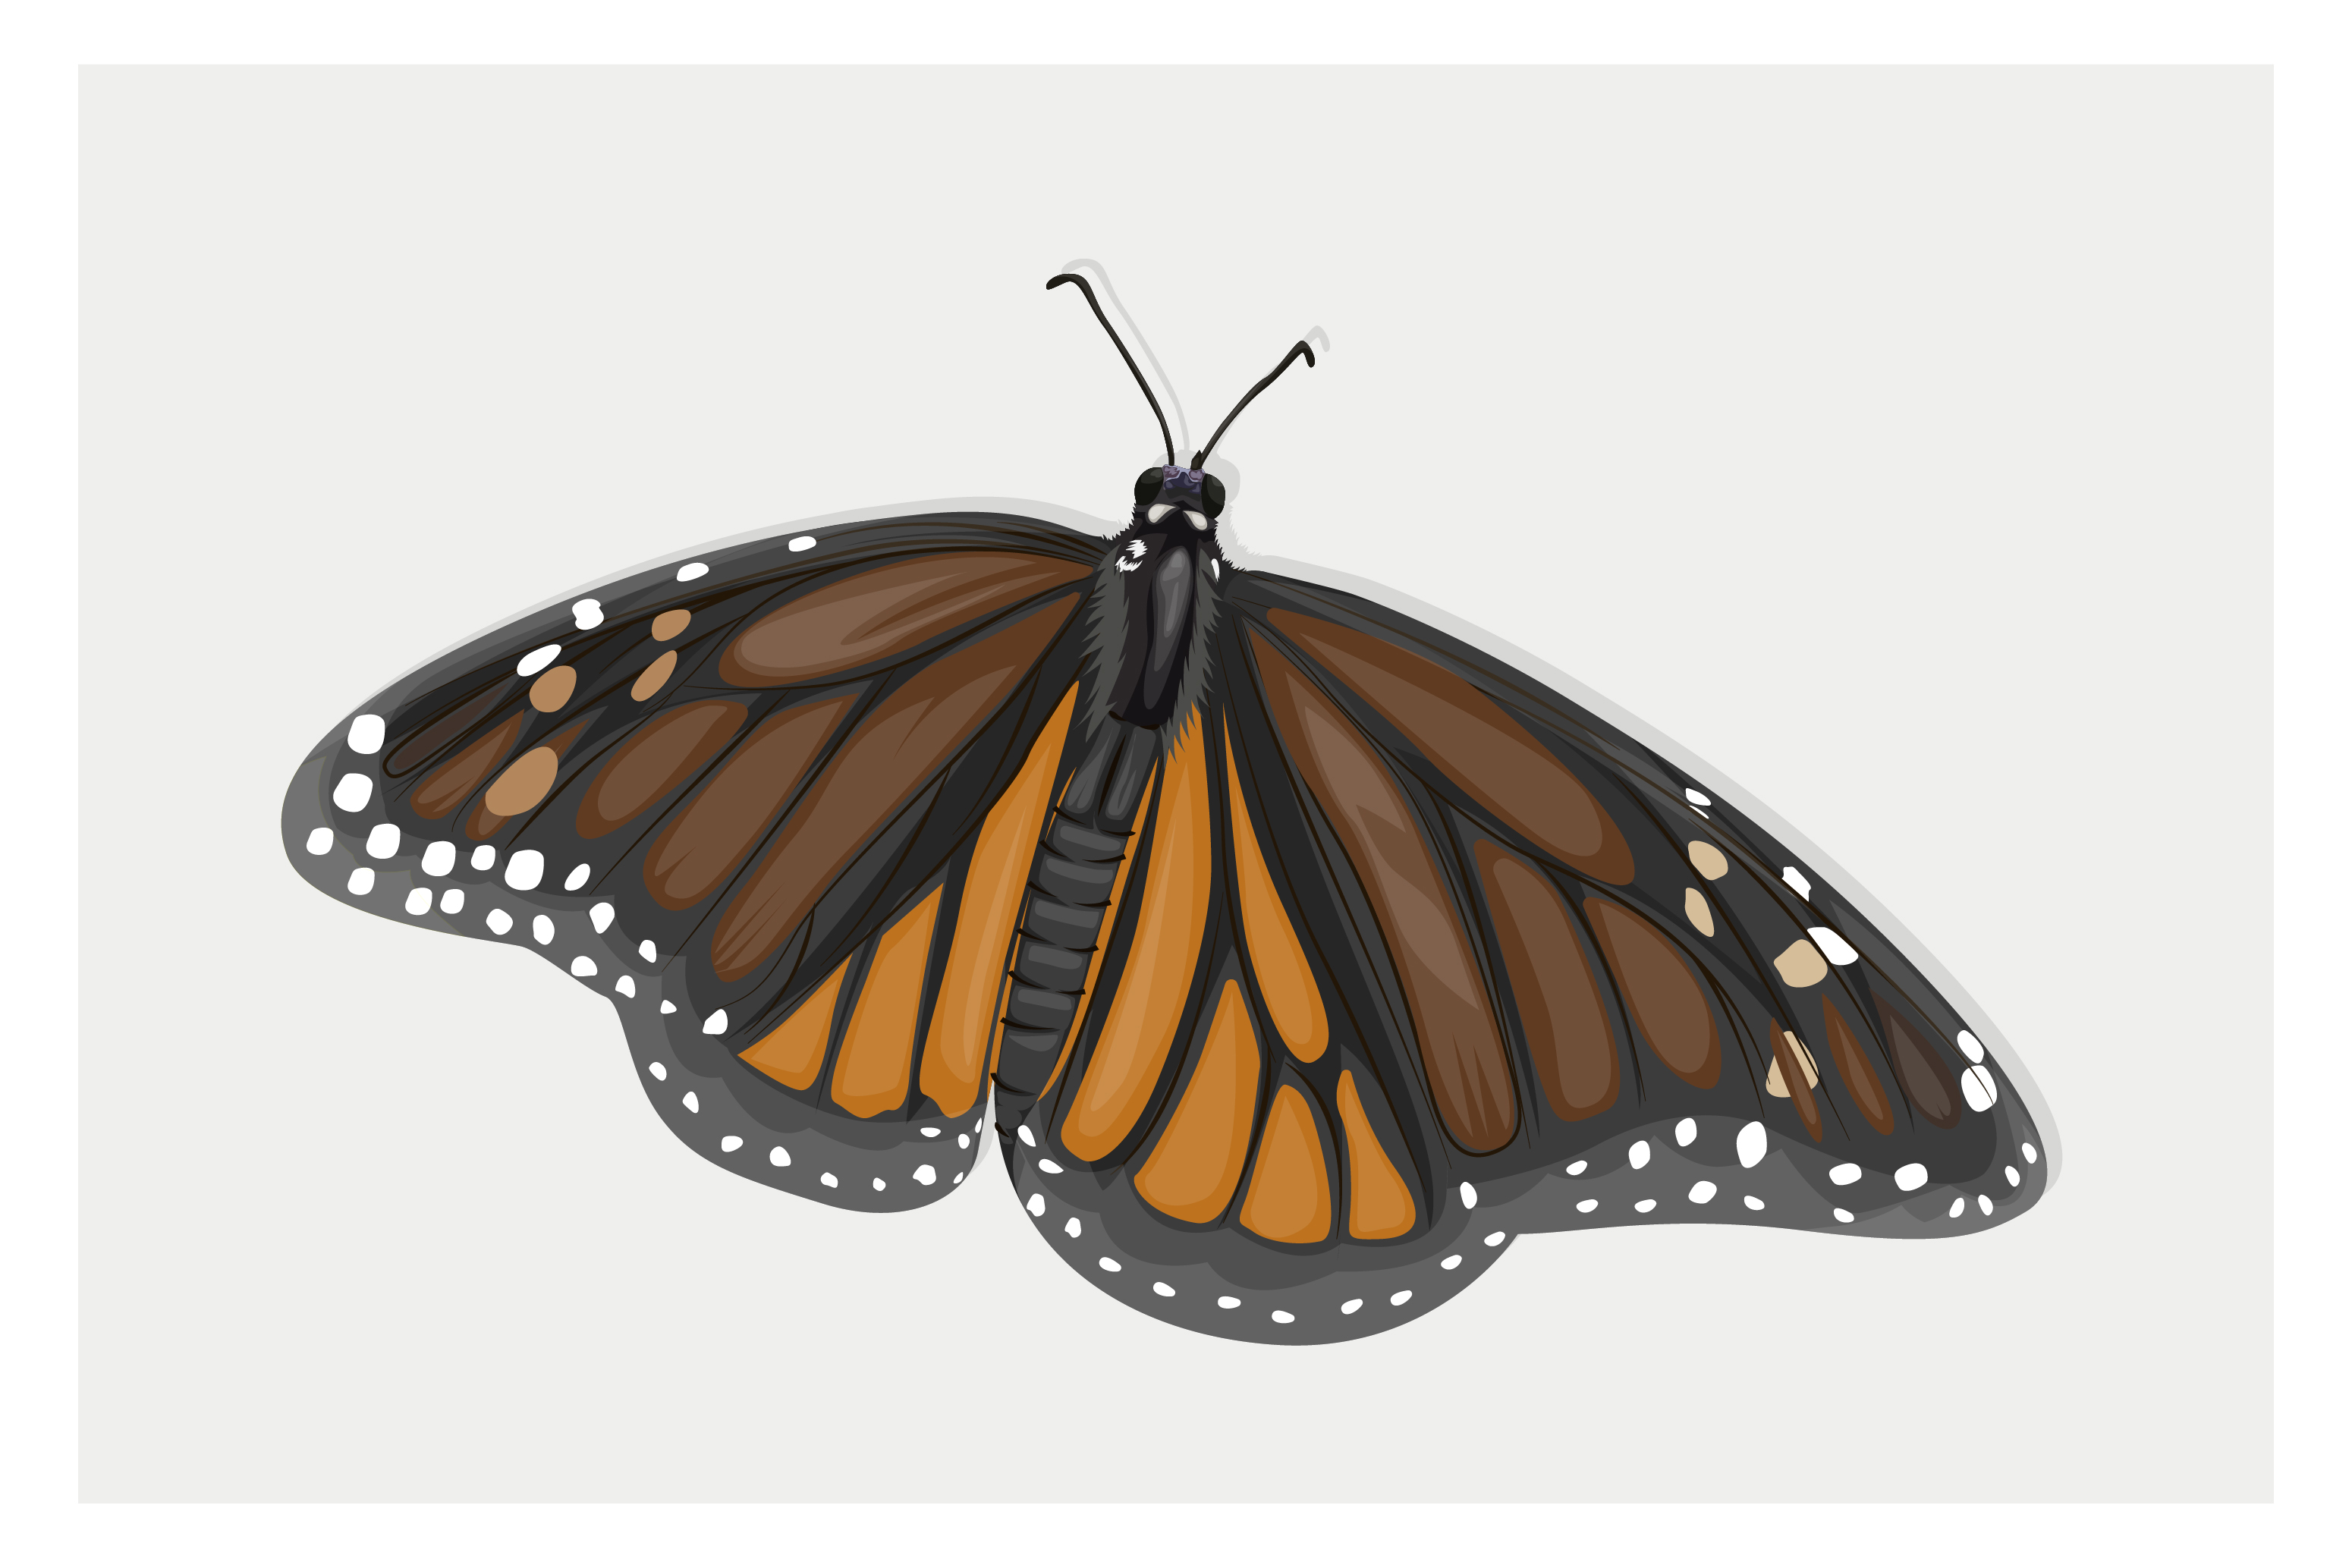 Download dibujo a mano de mariposa alada marrón - Descargar ...